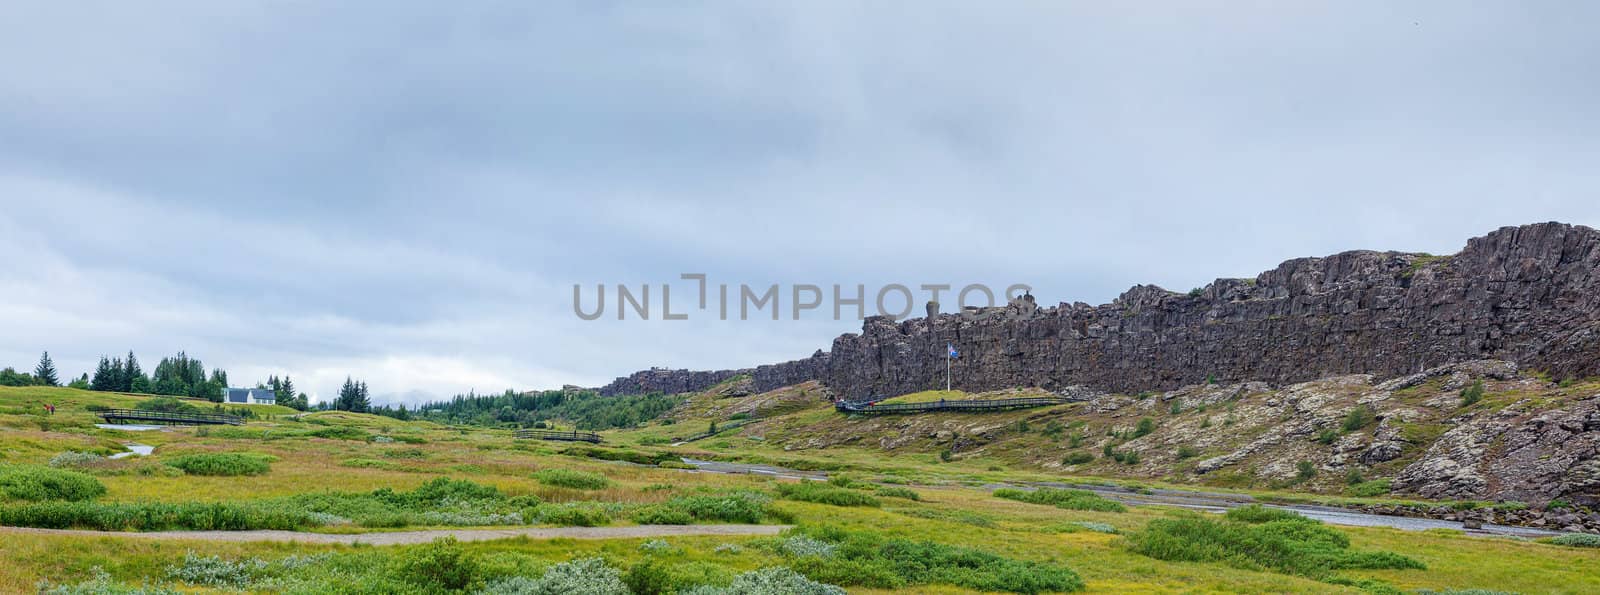 Iceland summer landscape. Thingvellir National Park - famous Icelandic area. Panorama